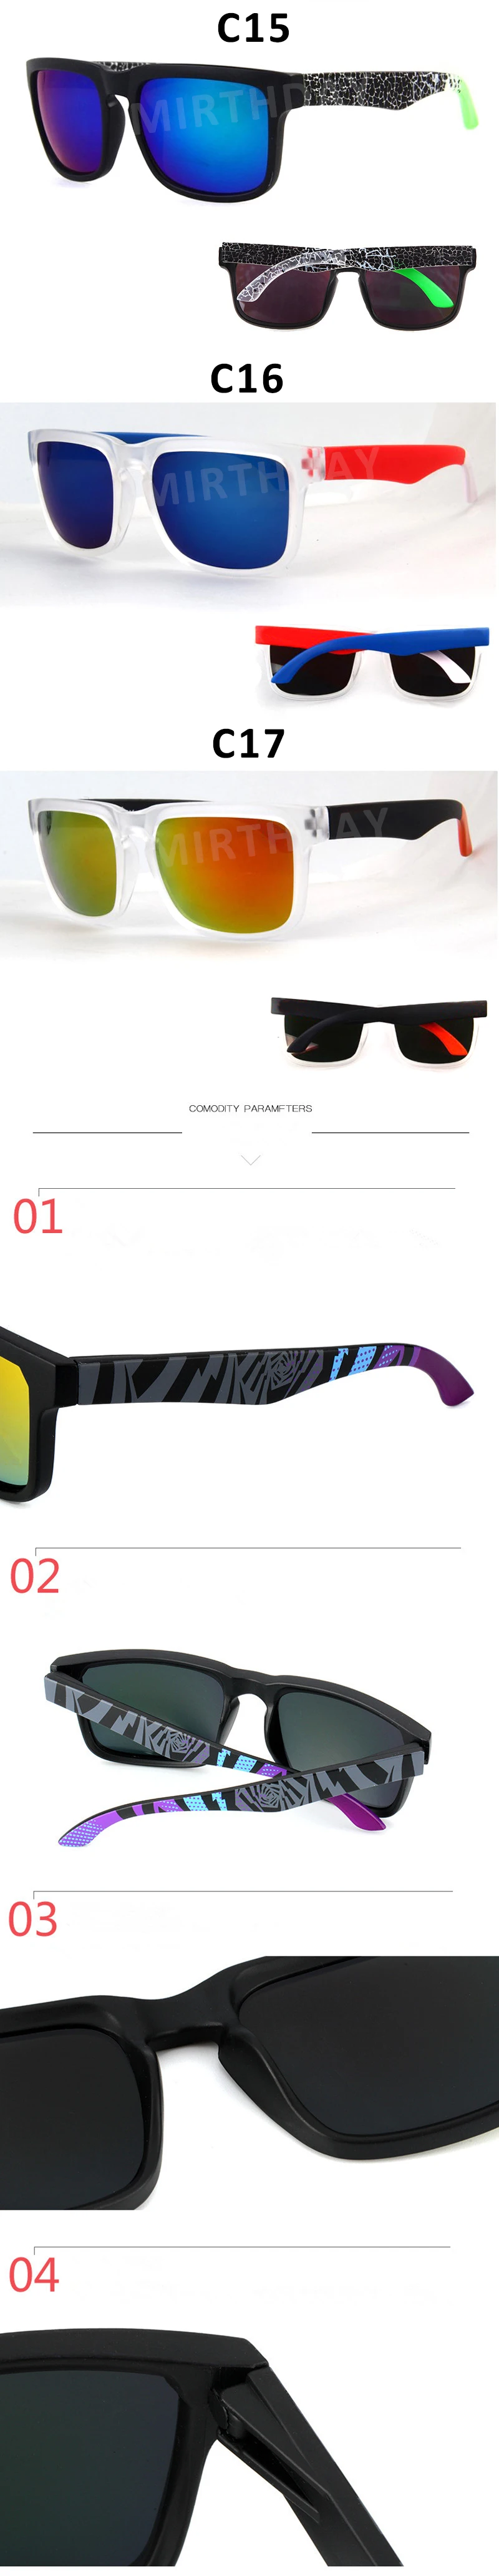 Ретро Кен Блок вождения солнцезащитные очки для мужчин Spied бренд дизайнер покрытие зеркало солнцезащитные очки мужские Открытый Спорт Рыбалка очки uv400